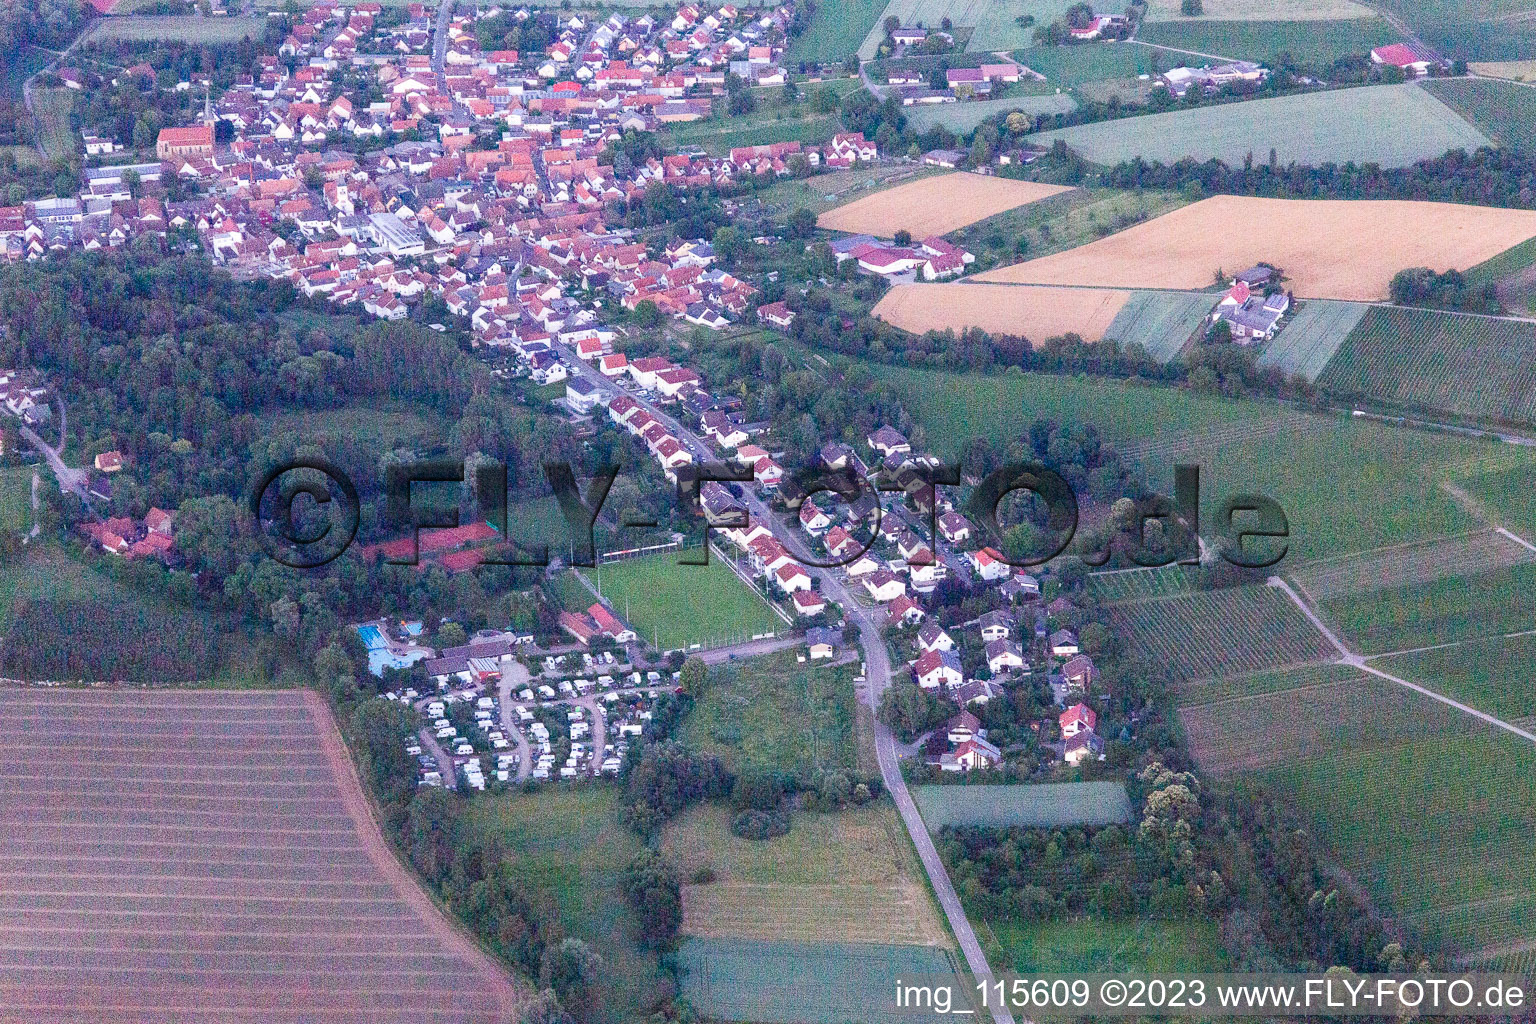 Ortsteil Ingenheim in Billigheim-Ingenheim im Bundesland Rheinland-Pfalz, Deutschland aus der Drohnenperspektive